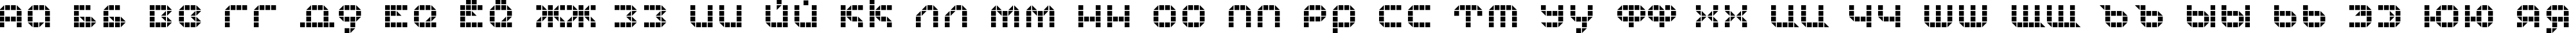 Пример написания русского алфавита шрифтом KB Tranceform